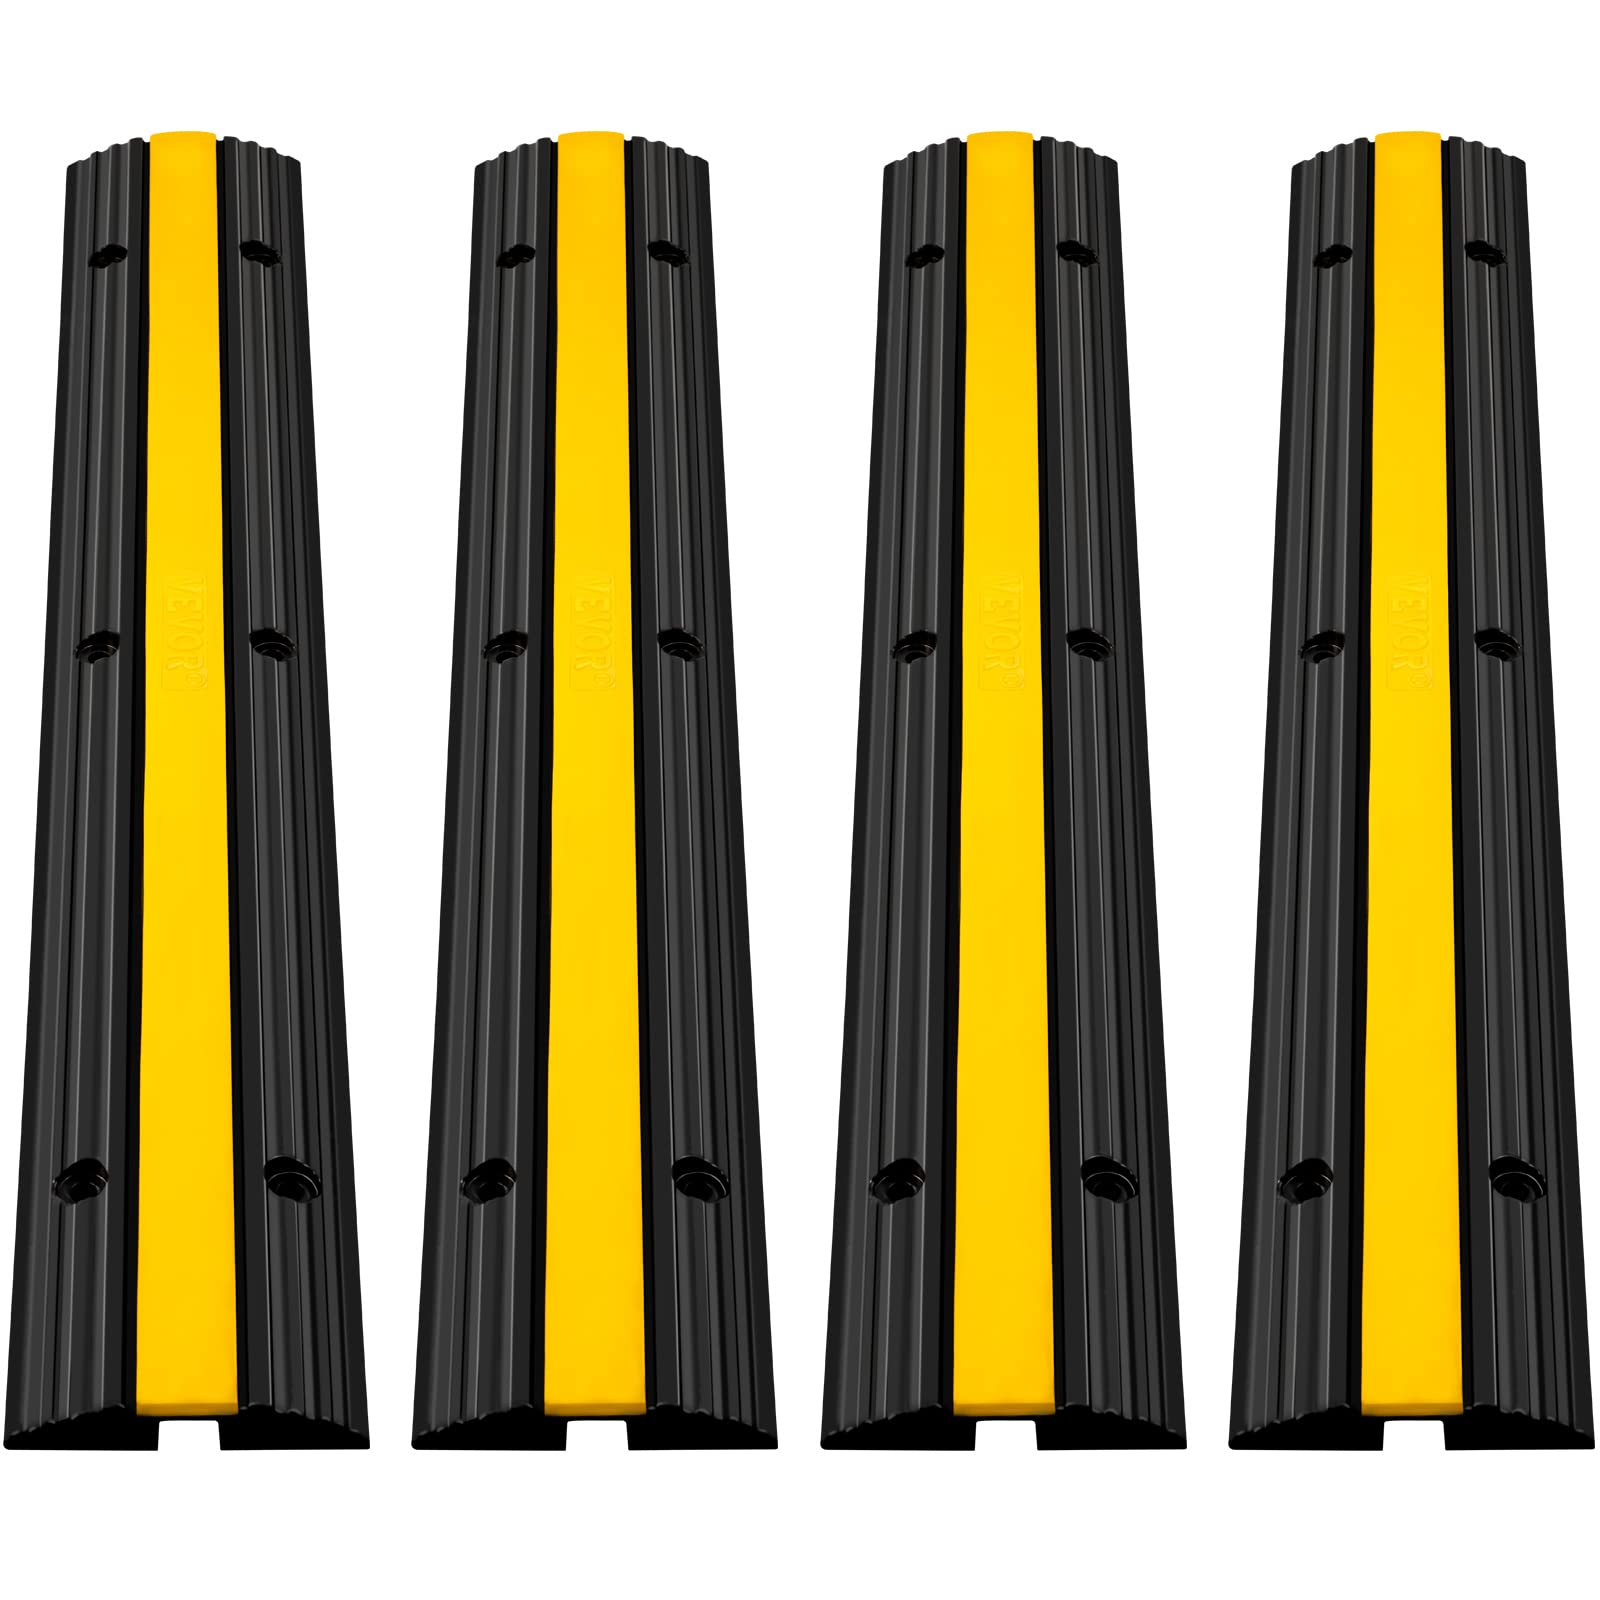 1 Kanal Kabelschutz Kabelbrücke 100 x 13 x 2 cm für Fußgänger / Radfahrer / Büro verschiedene Set-Größen in schwarz oder gelb 2 Stück, gelb 